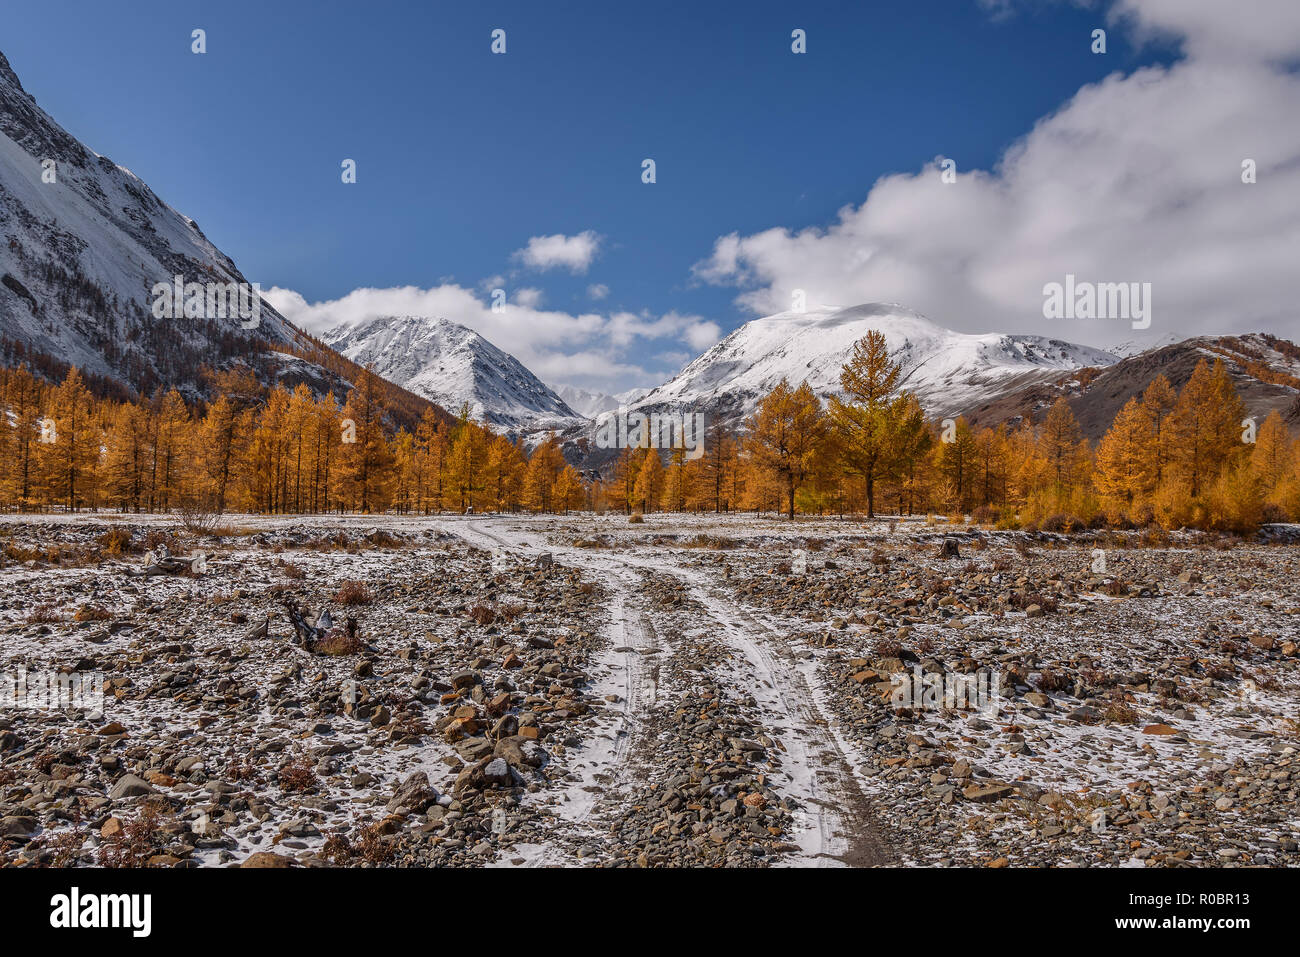 Erstaunlich Herbst Landschaft mit goldenen Lärchen, steiniger Weg und der erste Schnee in den Bergen gegen den blauen Himmel mit Wolken Stockfoto